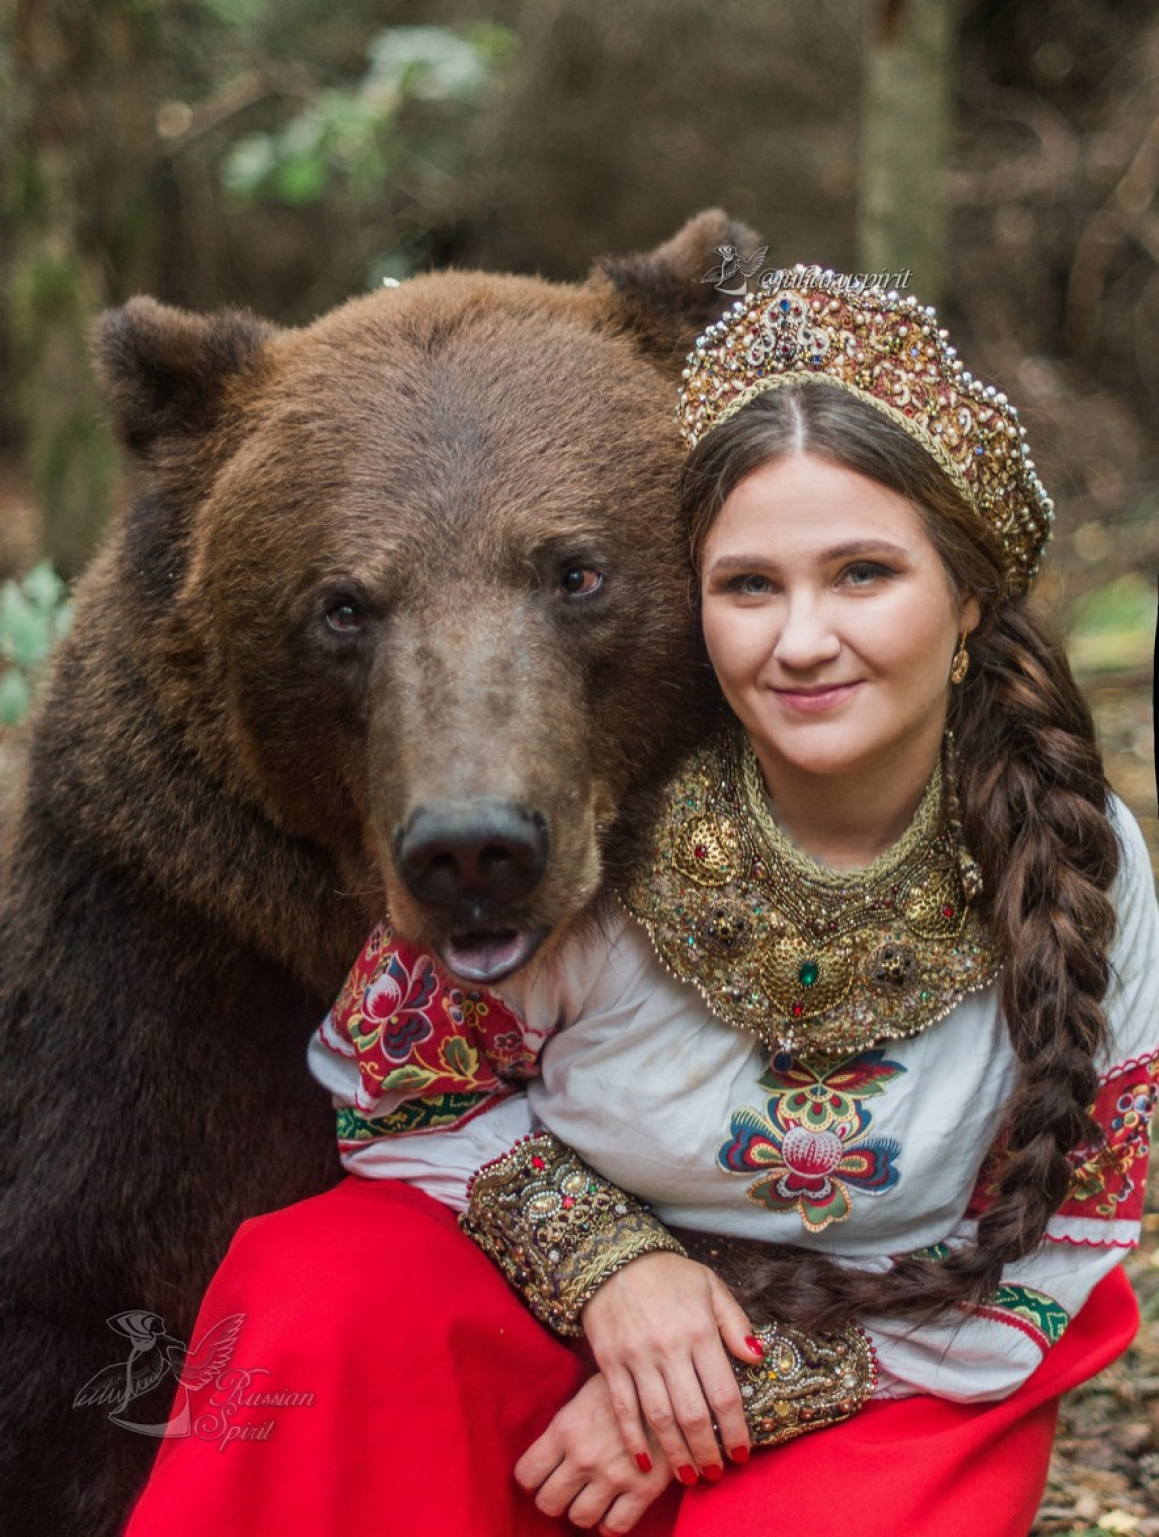 Toms russia. Где можно сфотографироваться с медведем в России. Славянские мотивы конкурс.